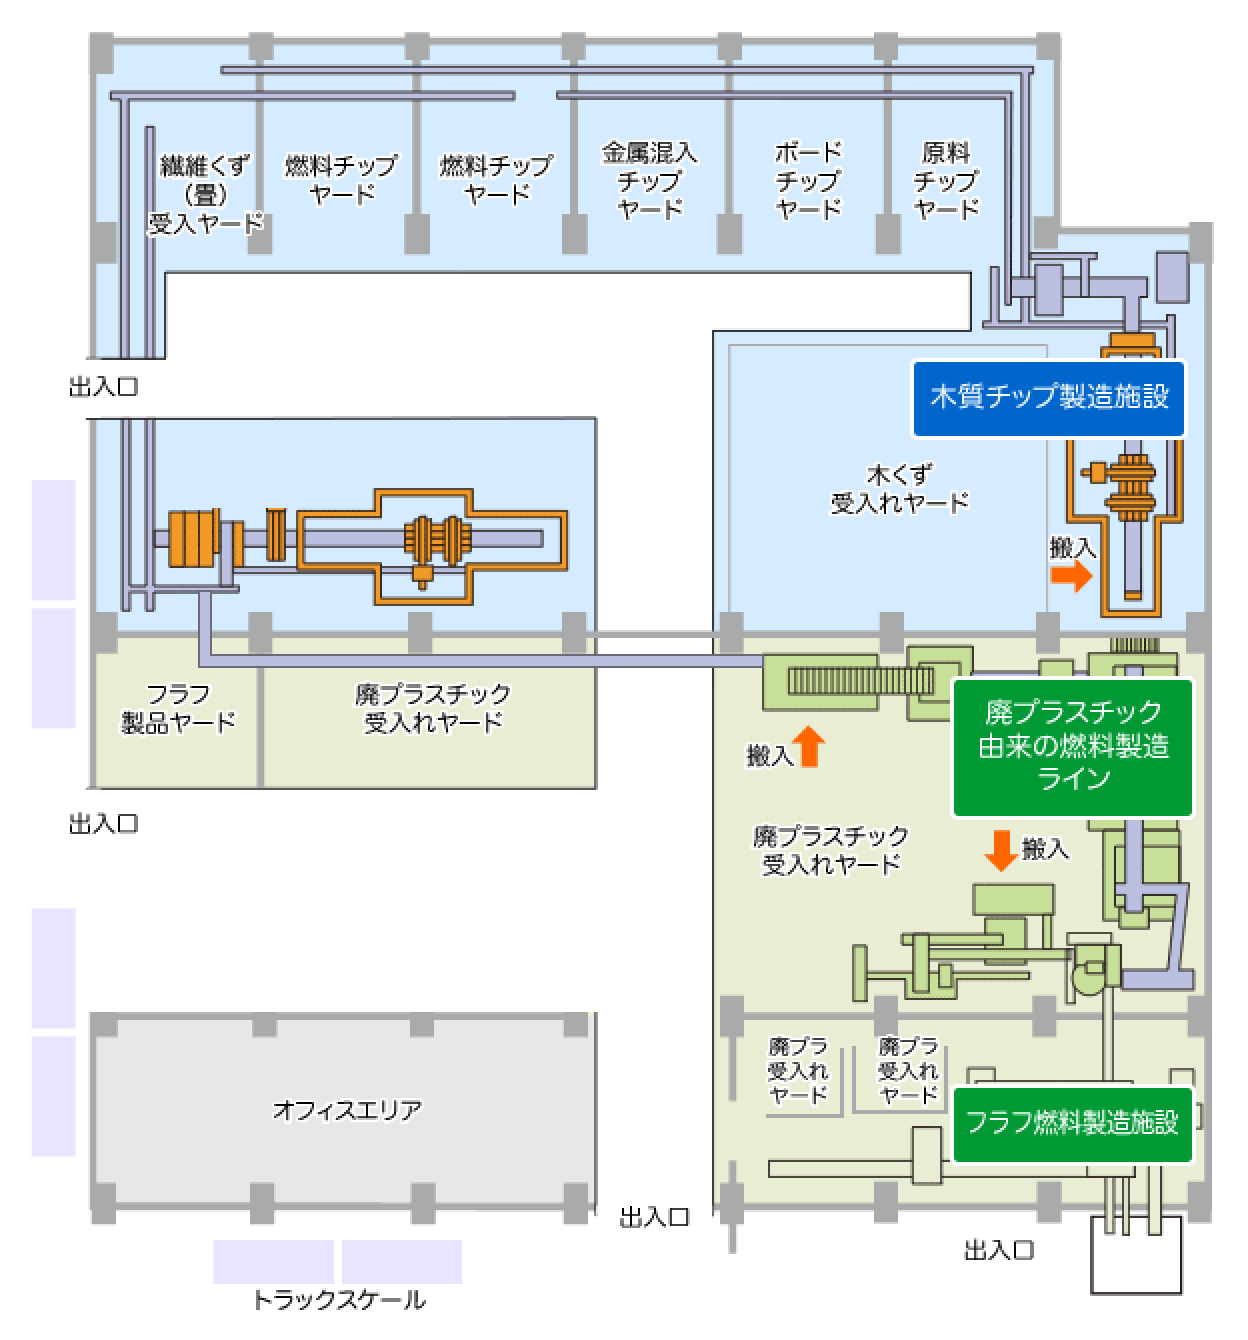 昭和35年頃 東京瓦斯(東京ガス)[豊洲工場(書き込み傷み多し)]工場平面図/製造工程図